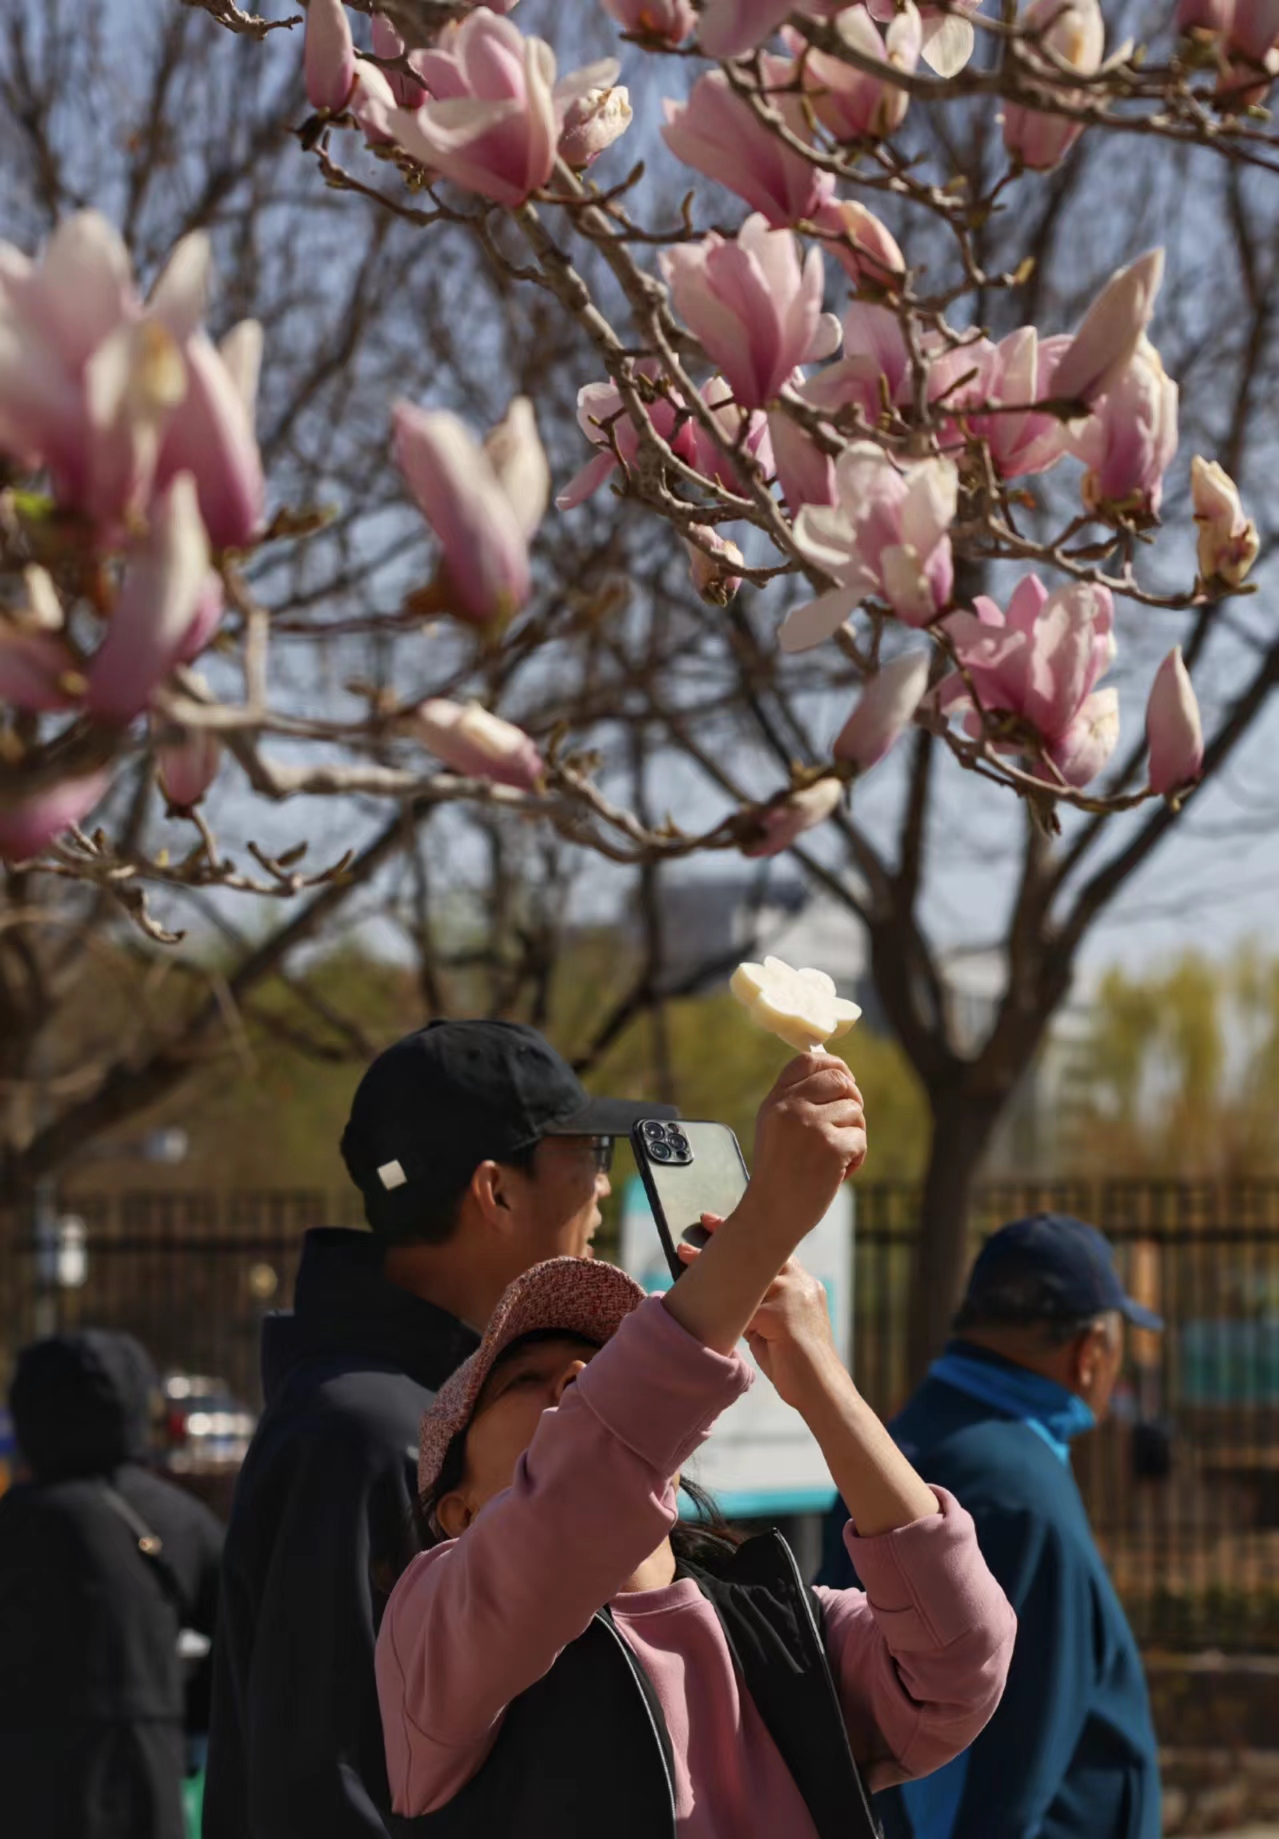 市民拿著文創雪糕在玉蘭花下拍照。新京報記者 浦峰 攝